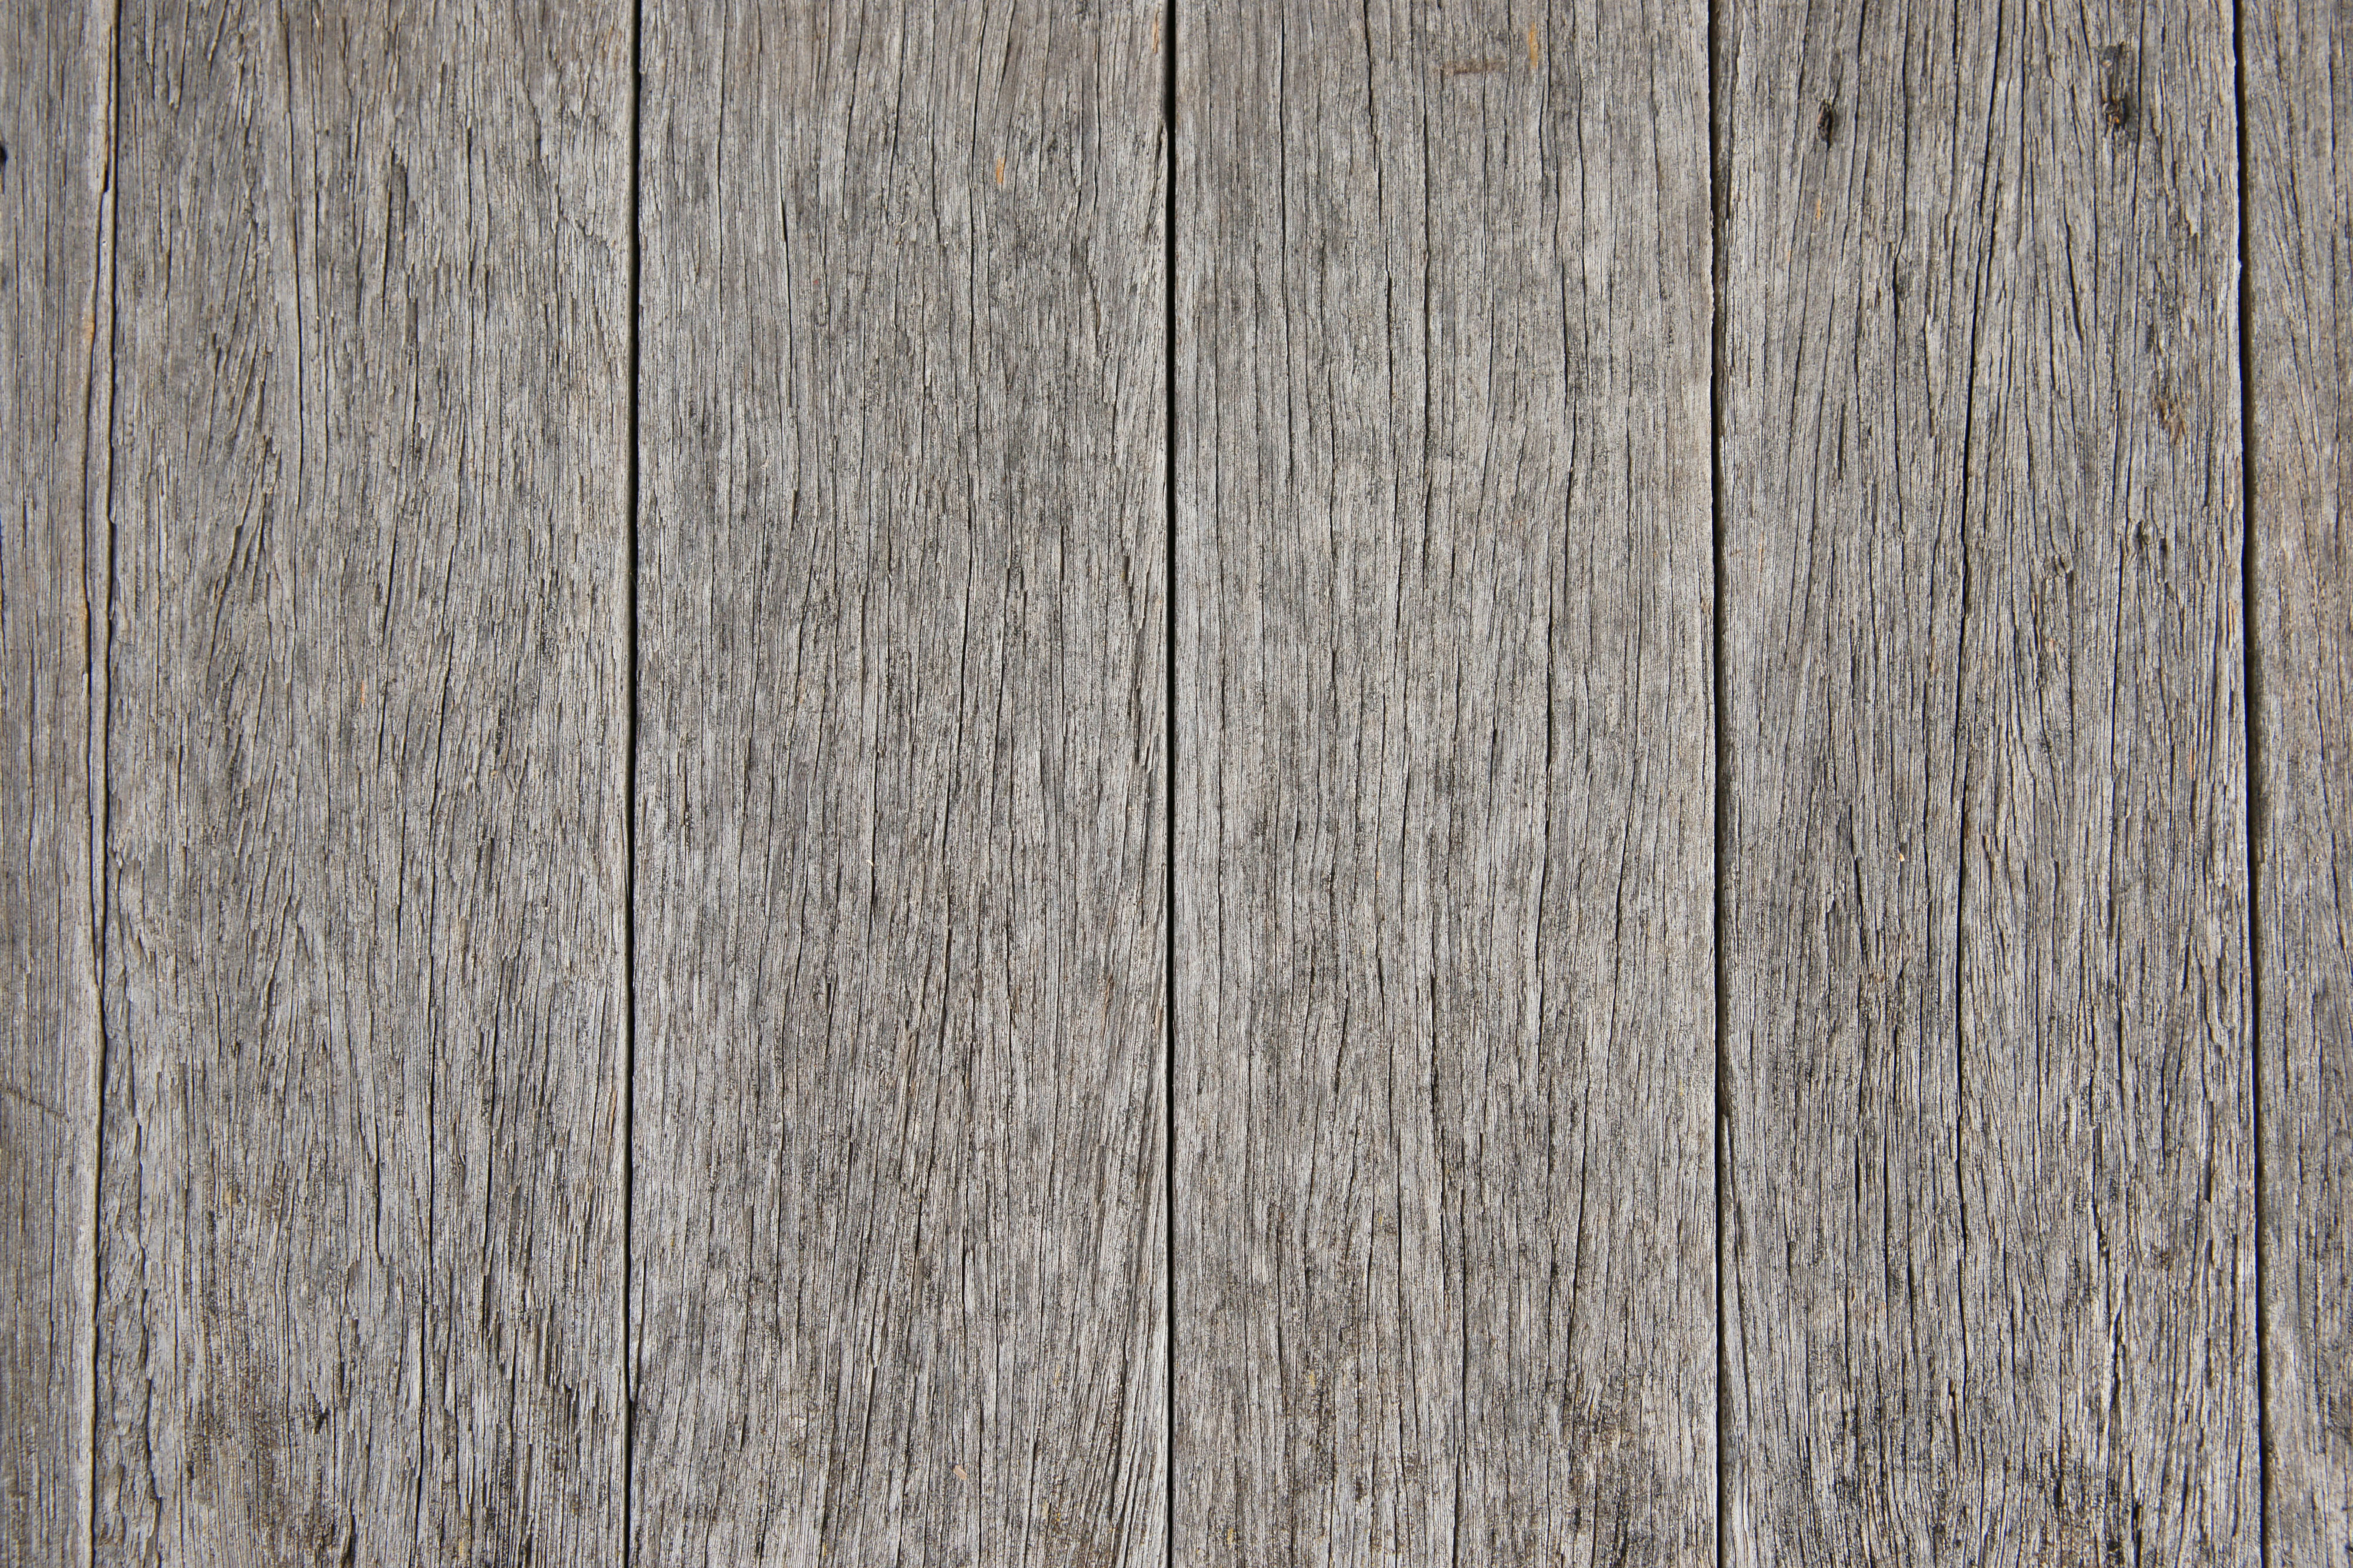 30 Elegant Hardwood Floor Texture Unique Flooring Ideas